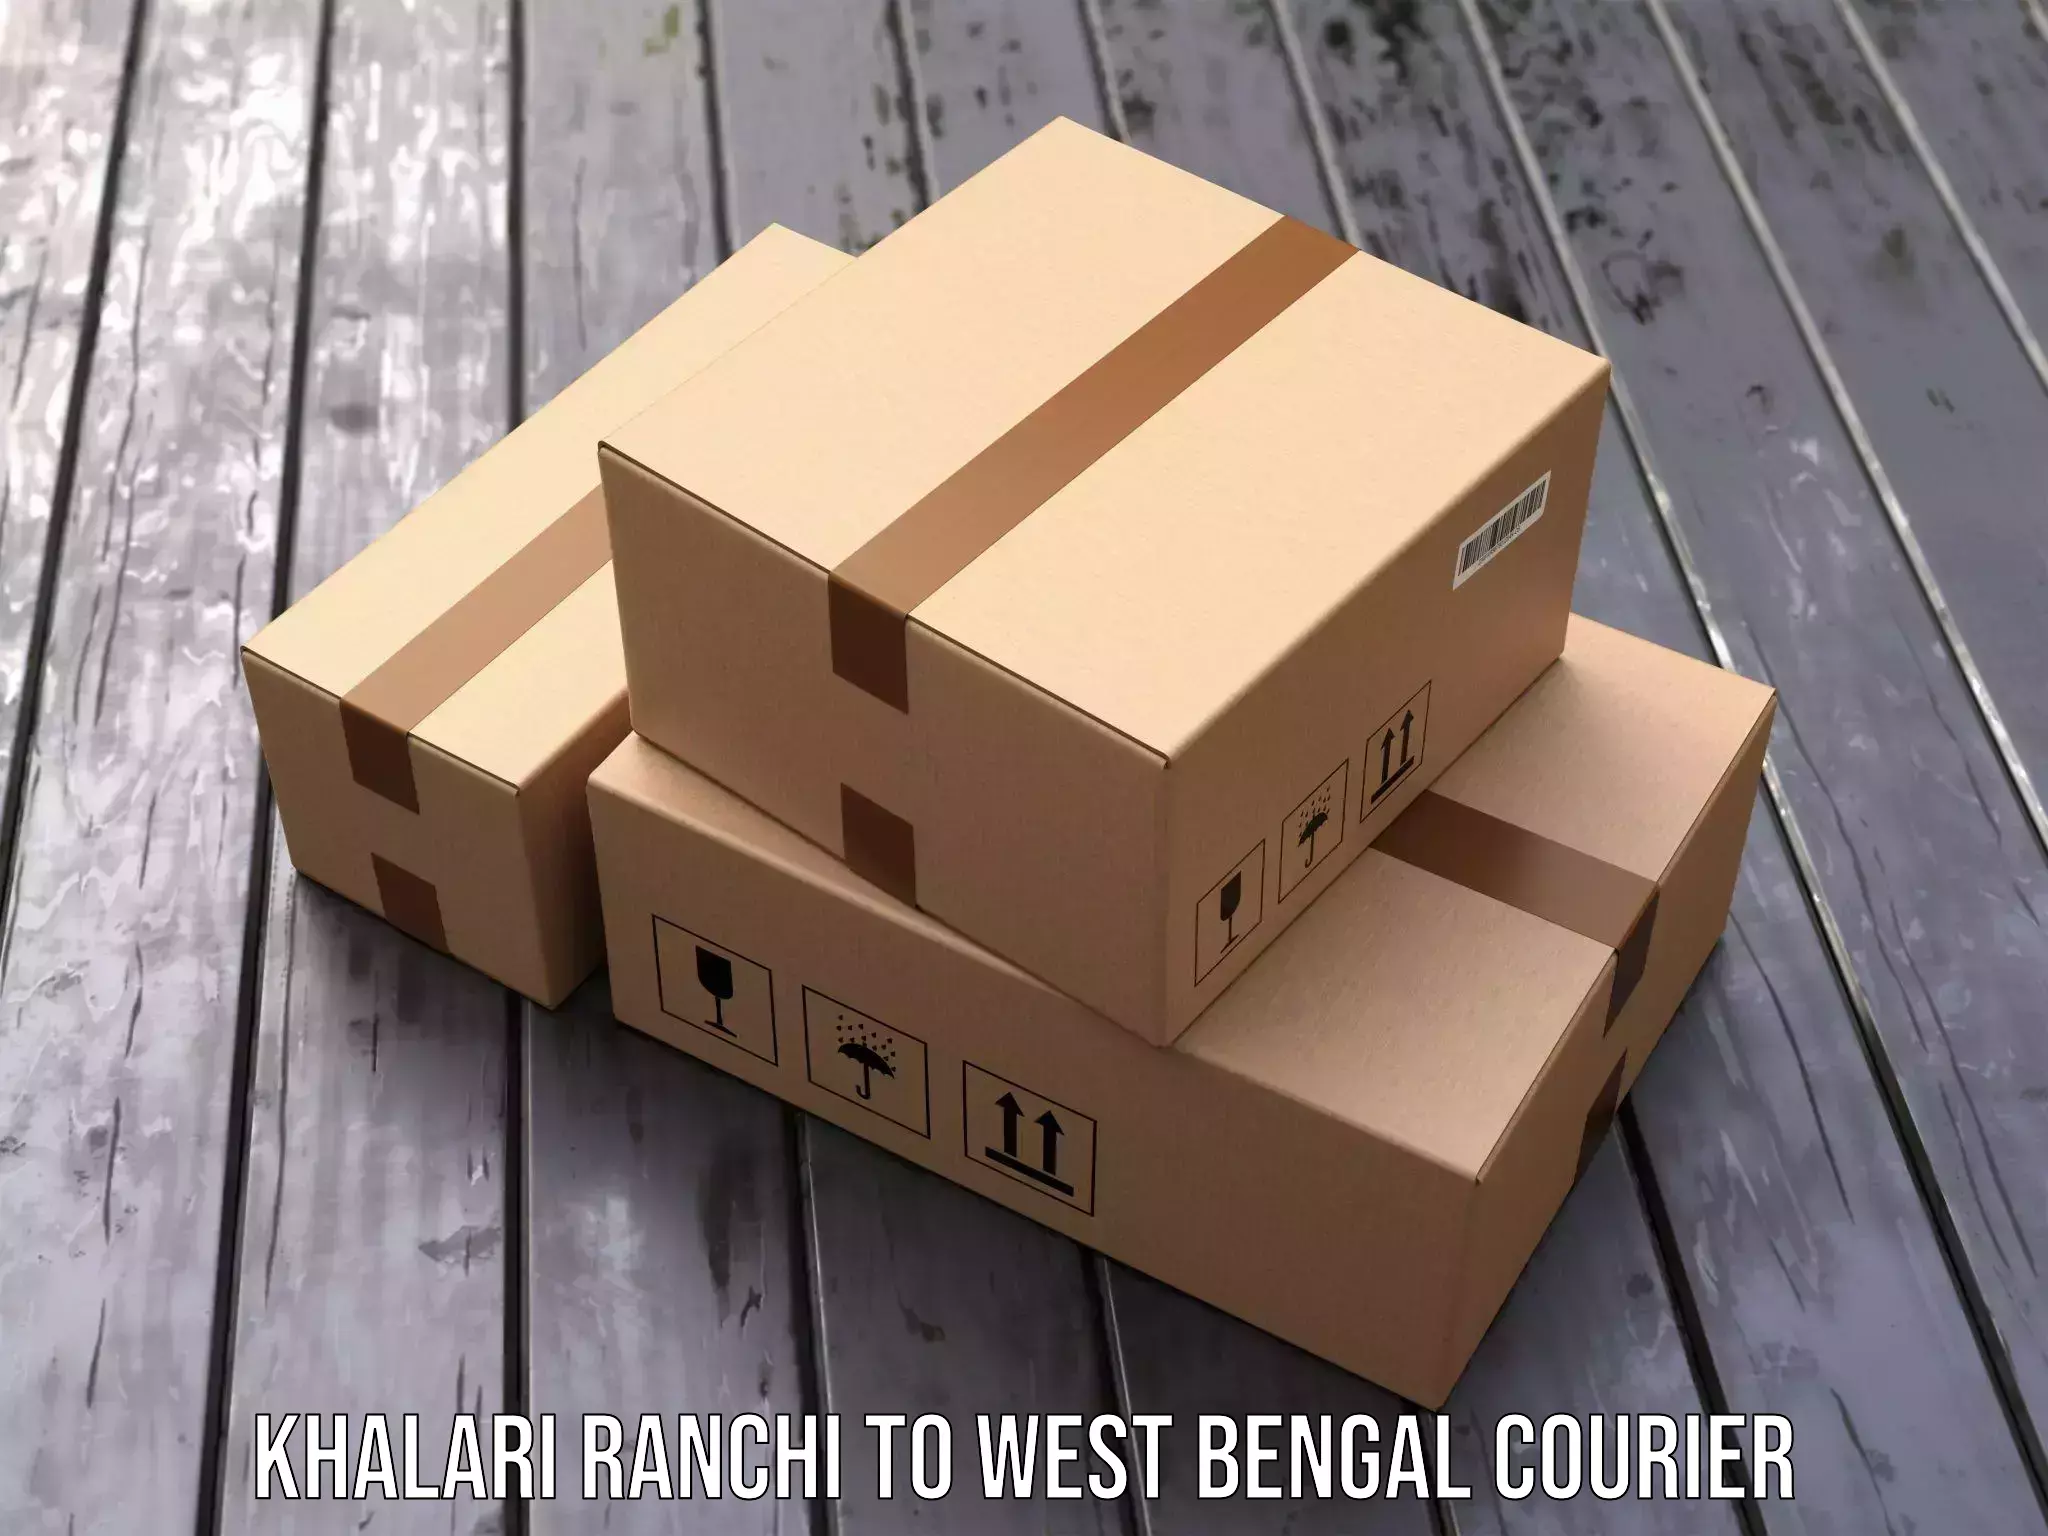 Cargo delivery service Khalari Ranchi to Binnaguri